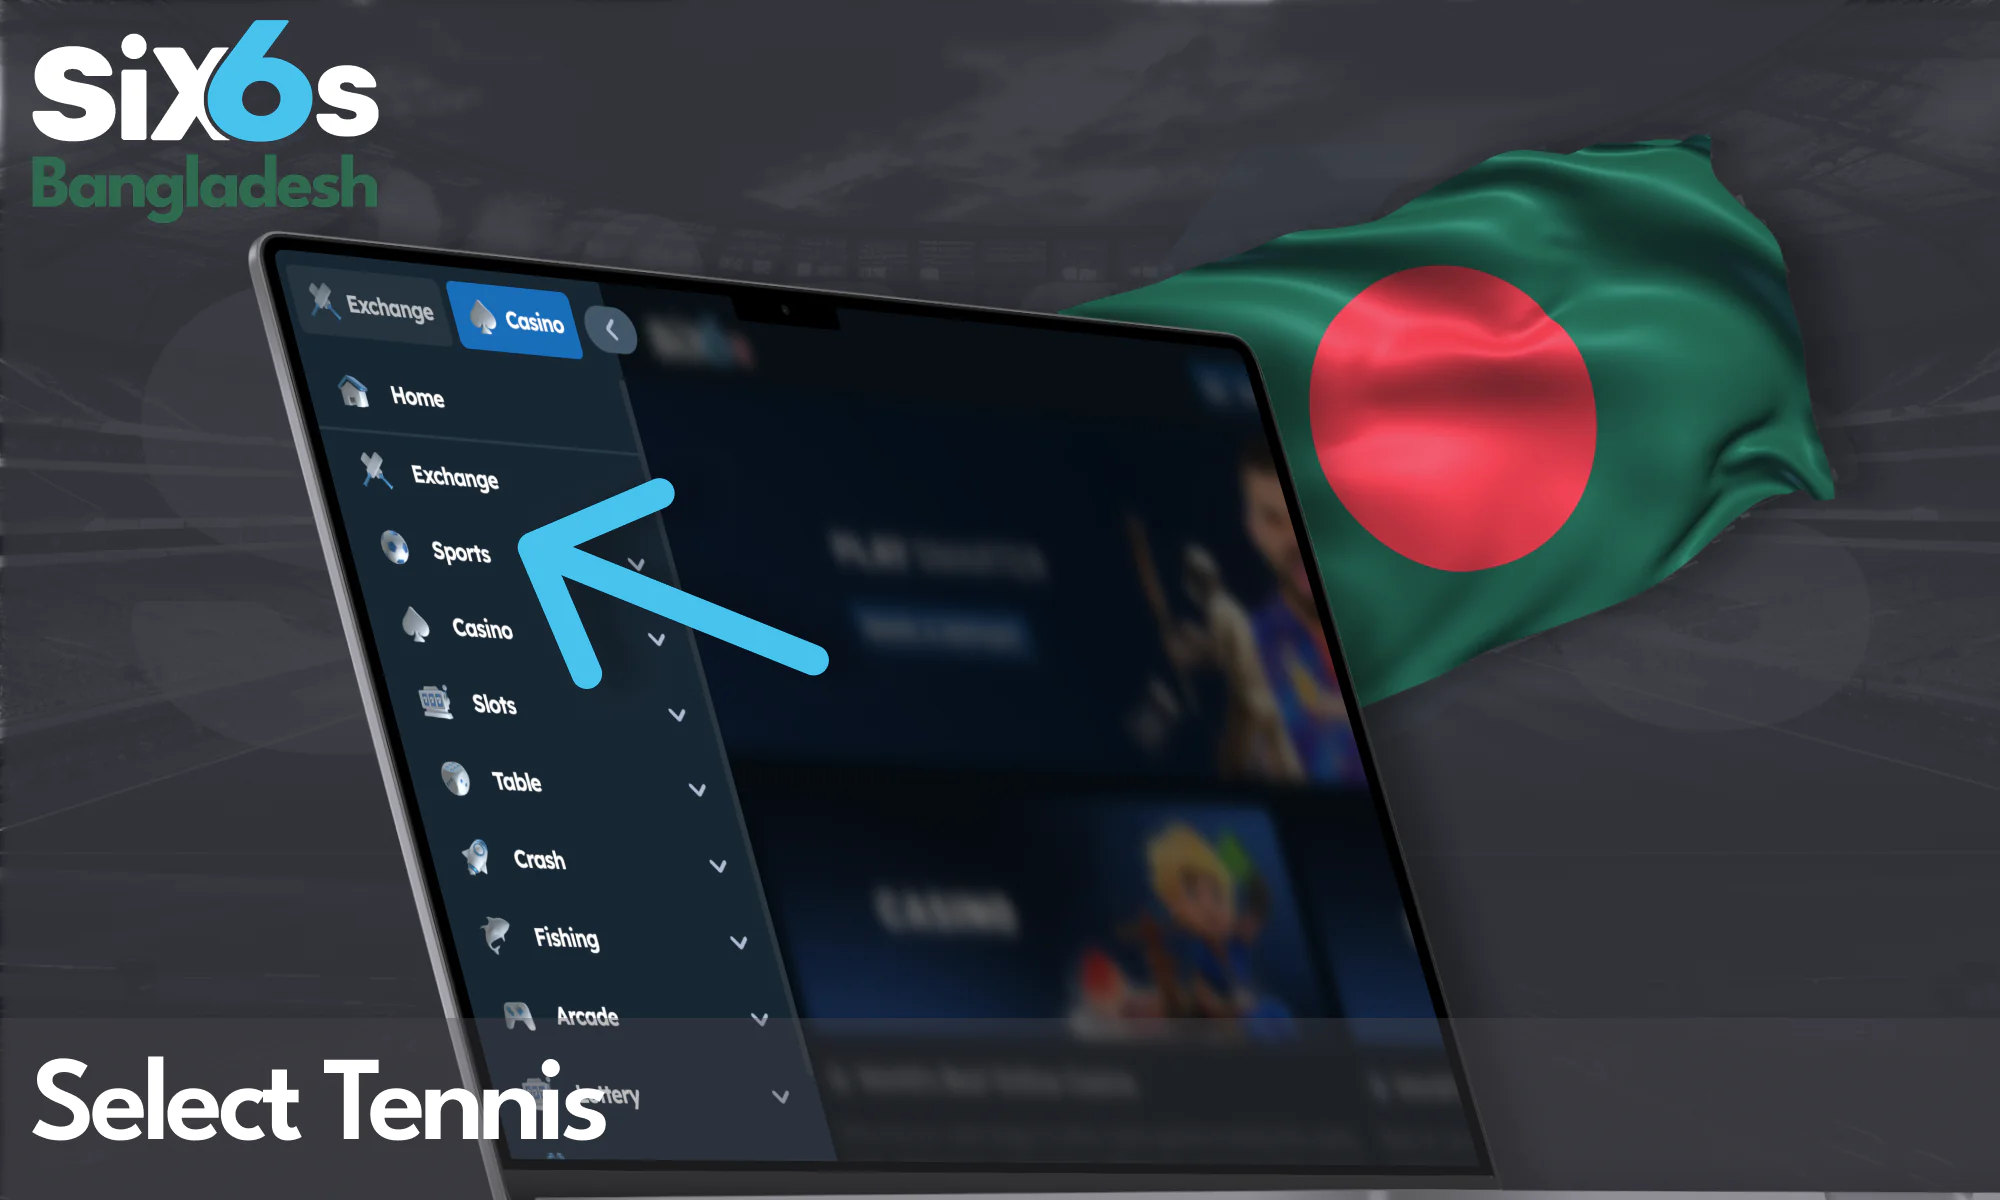 Choose Tennis section at the Six6s Bangladesh menu